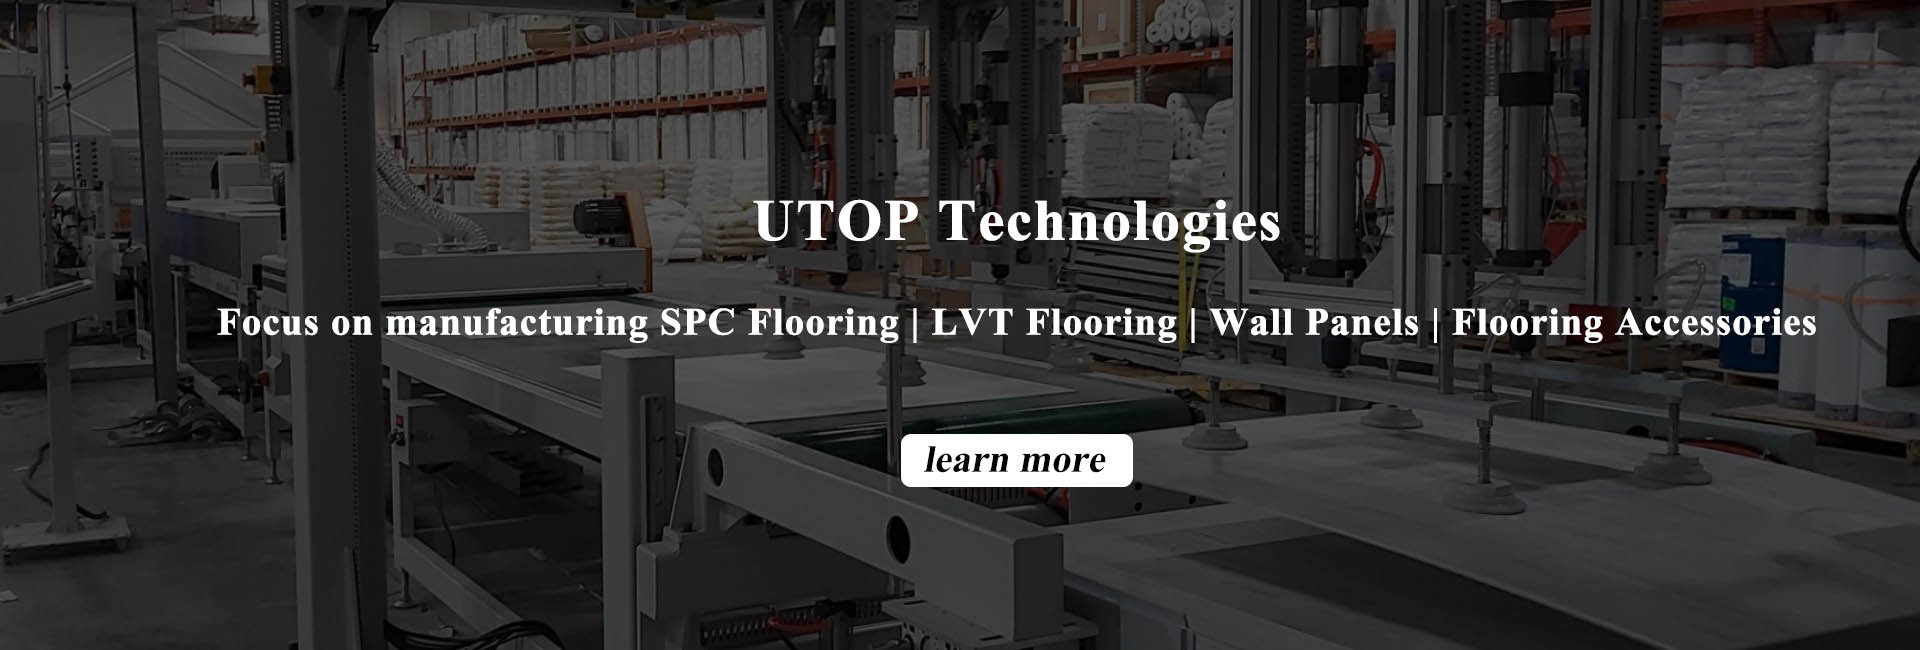 spc-flooring-workshop-overview